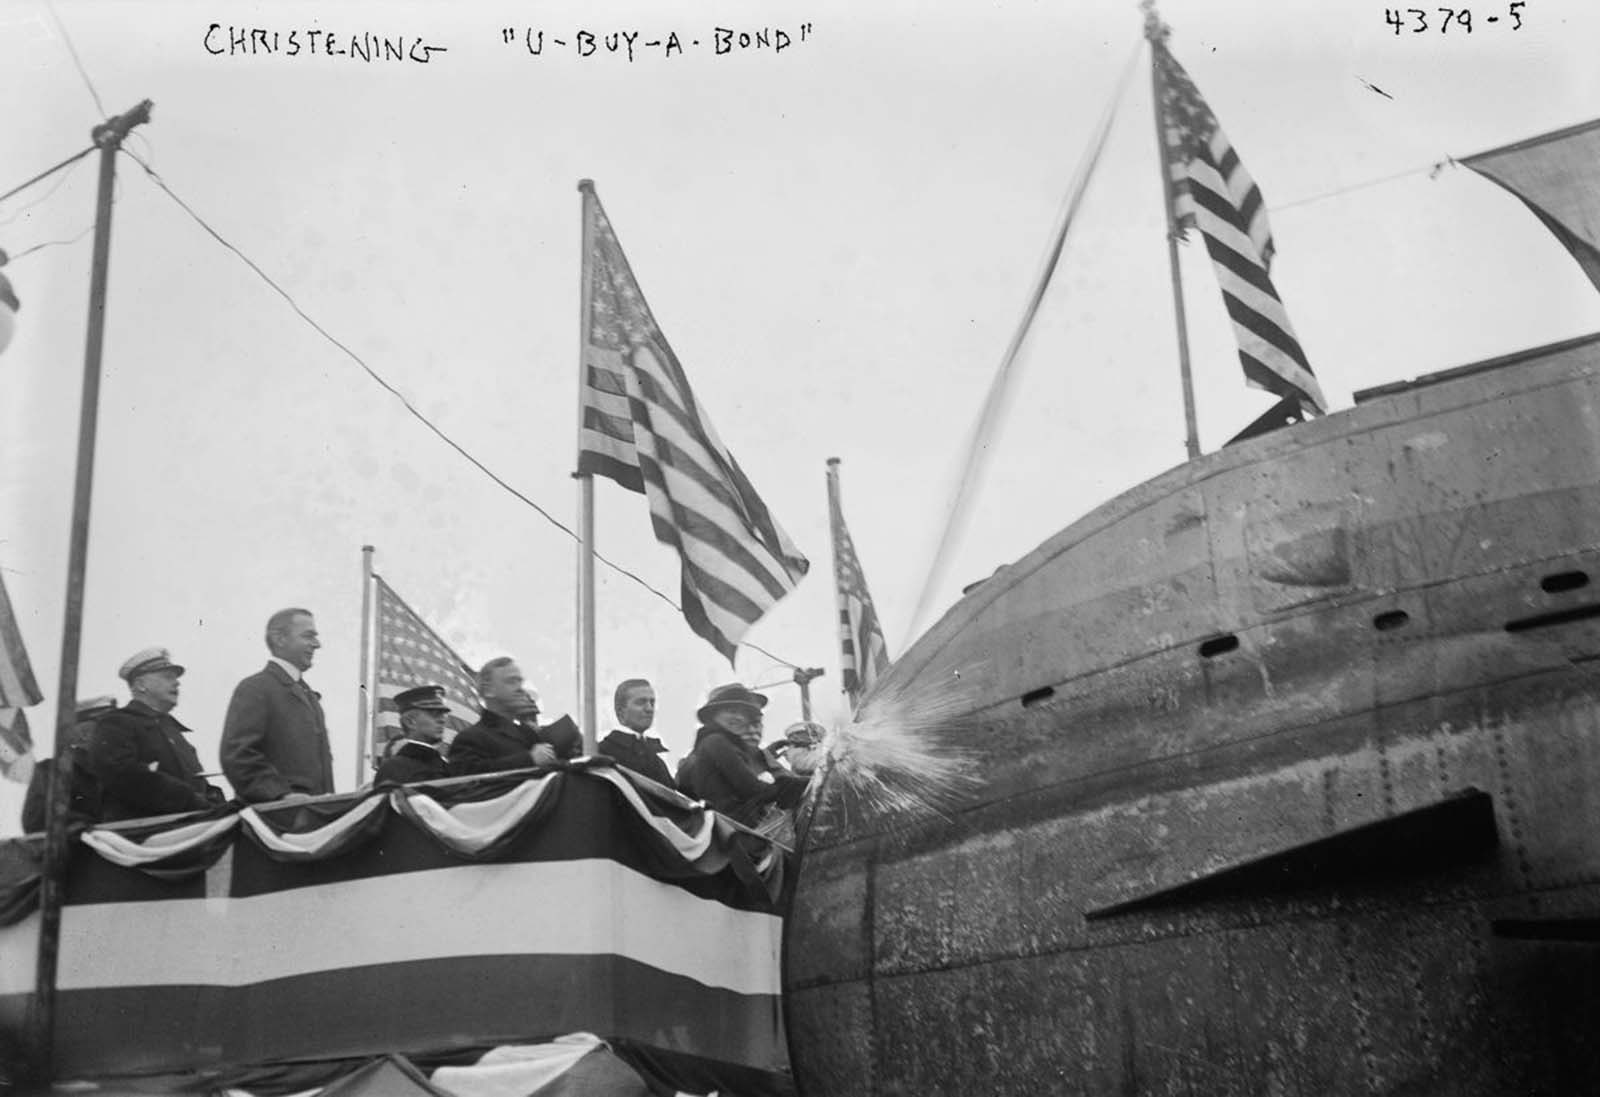 Quand un sous-marin allemand U-Boat et des chars se sont retrouvés dans Central Park à New York, 1917-1918